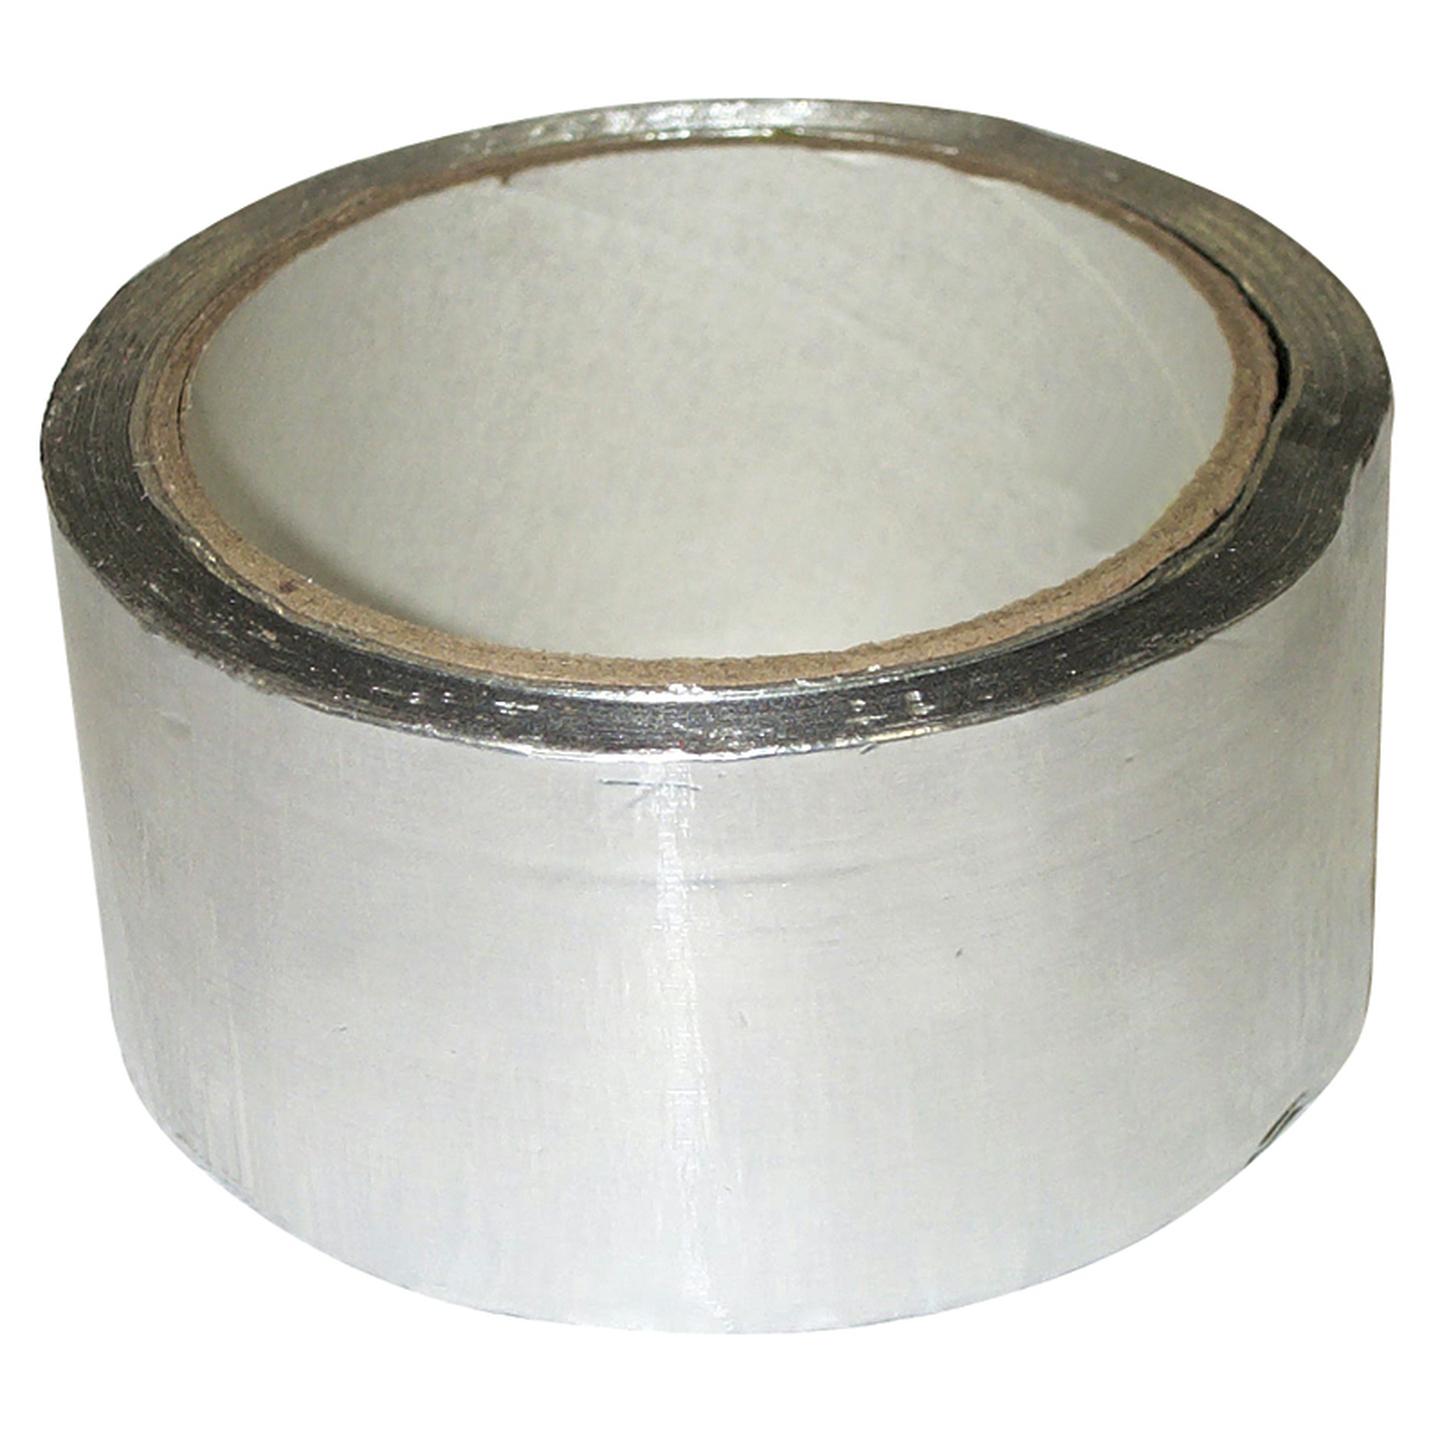 Aluminium Foil Tape - 50mm